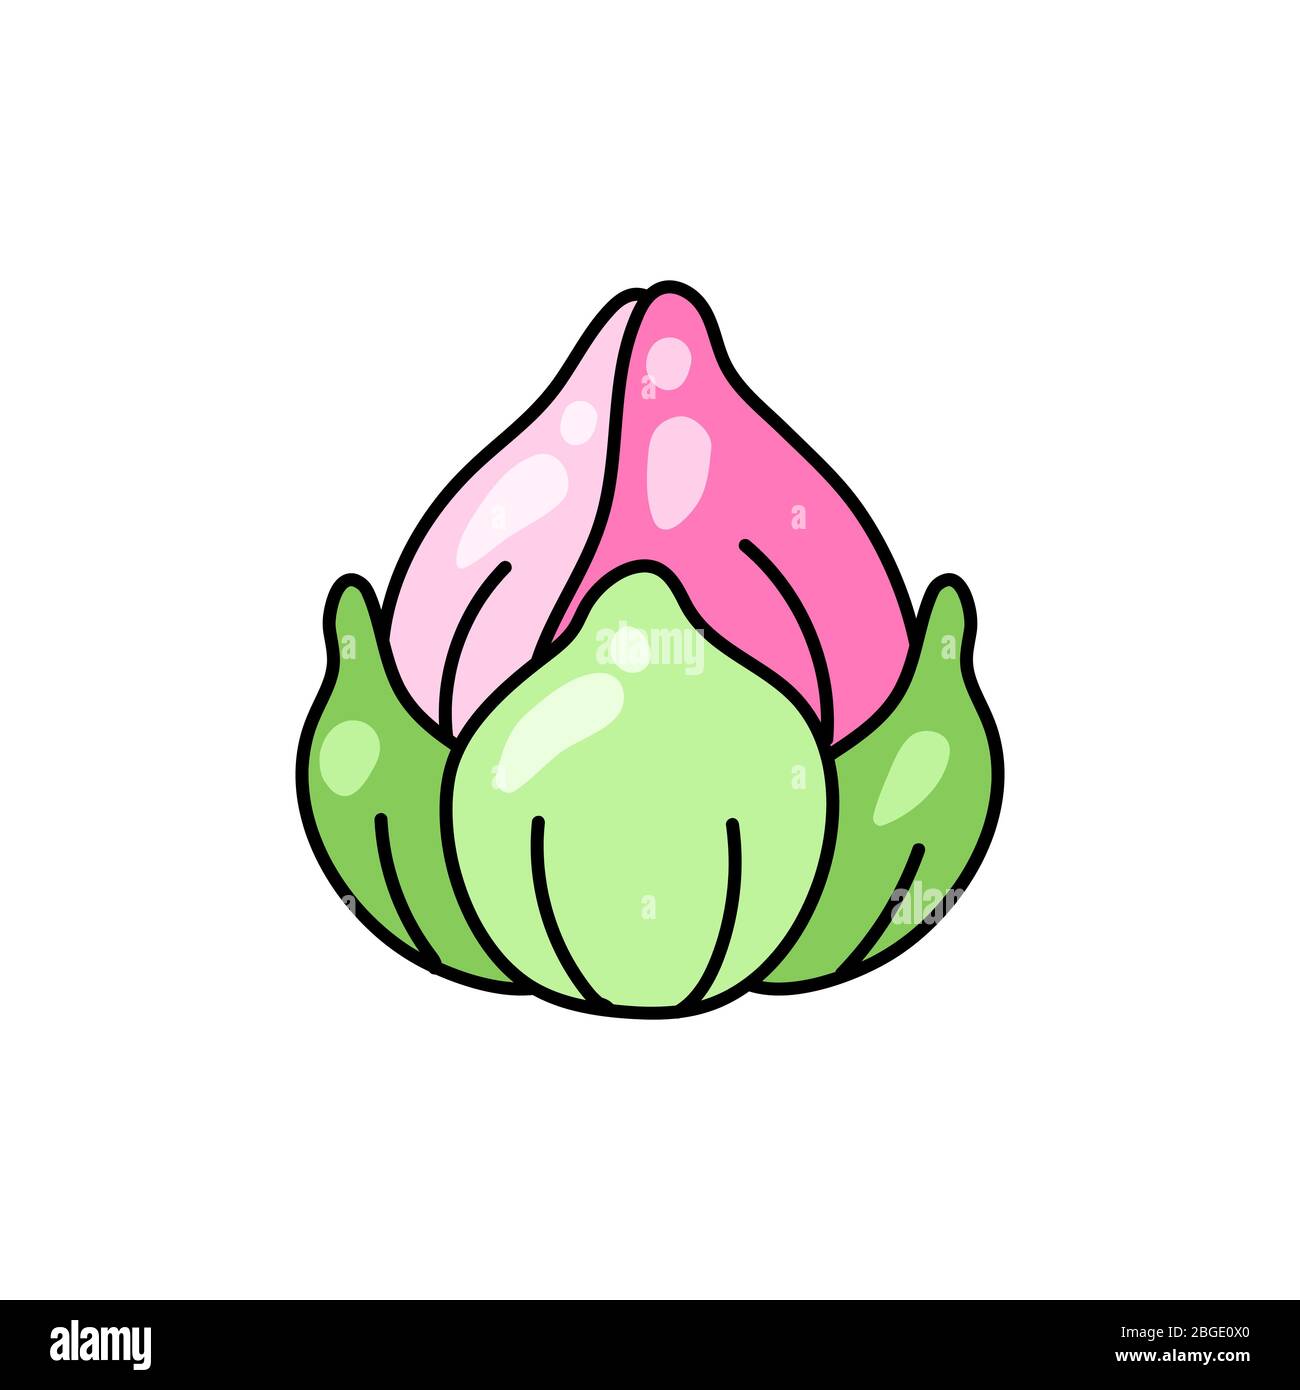 Illustrazione del fiore di loto. Immagine decorativa di giglio d'acqua. Illustrazione Vettoriale